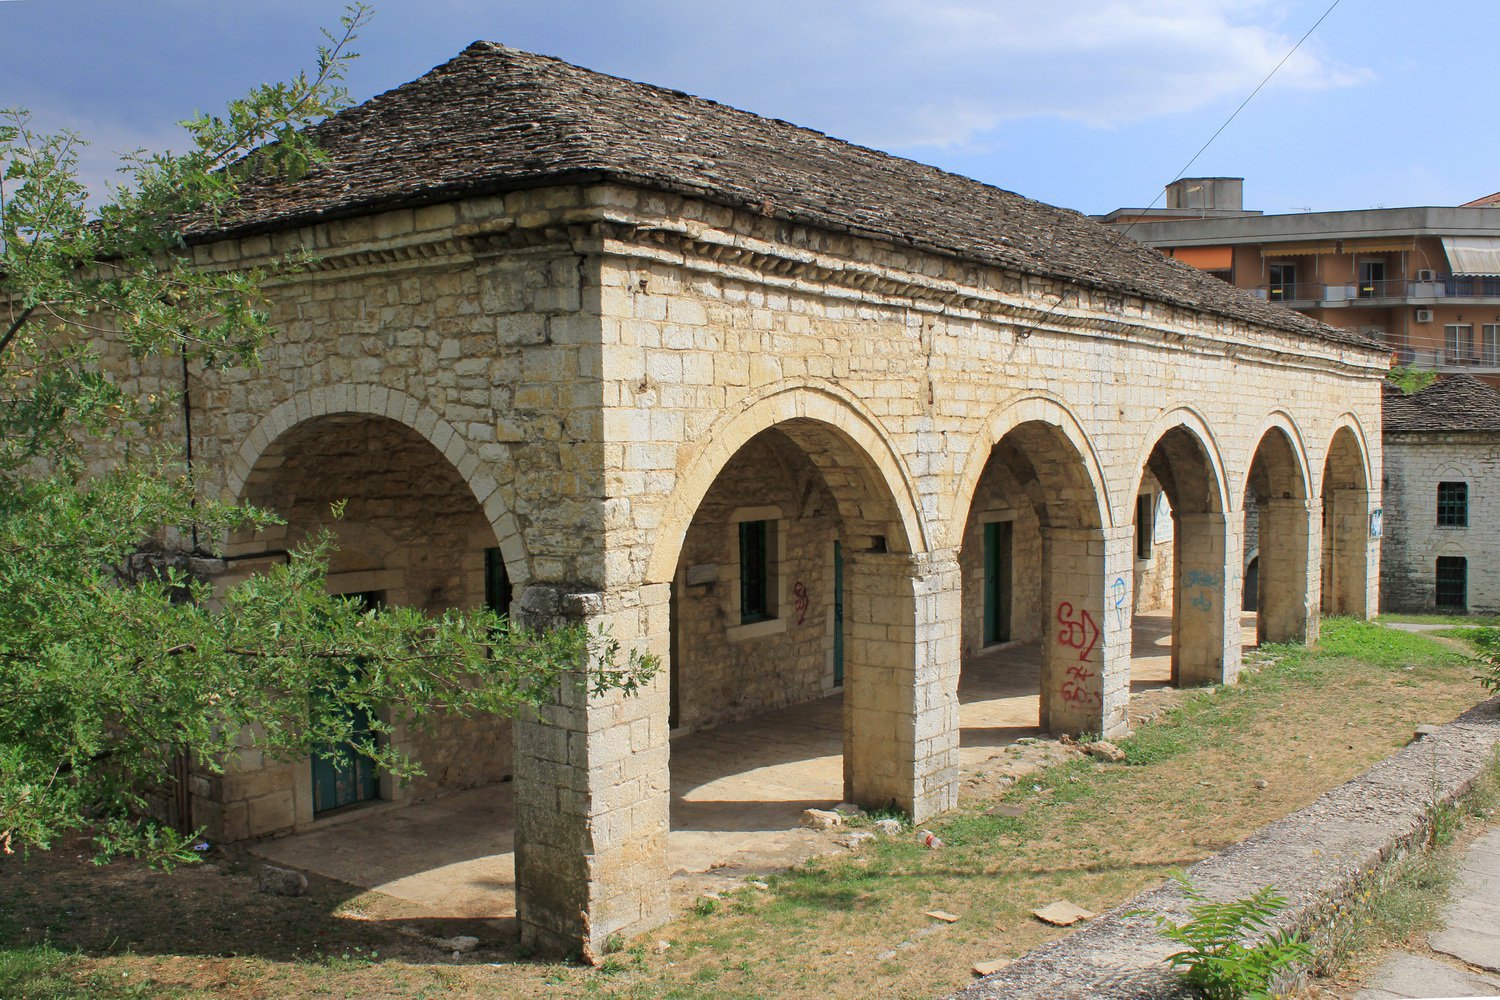 Veli Pasha's building complex